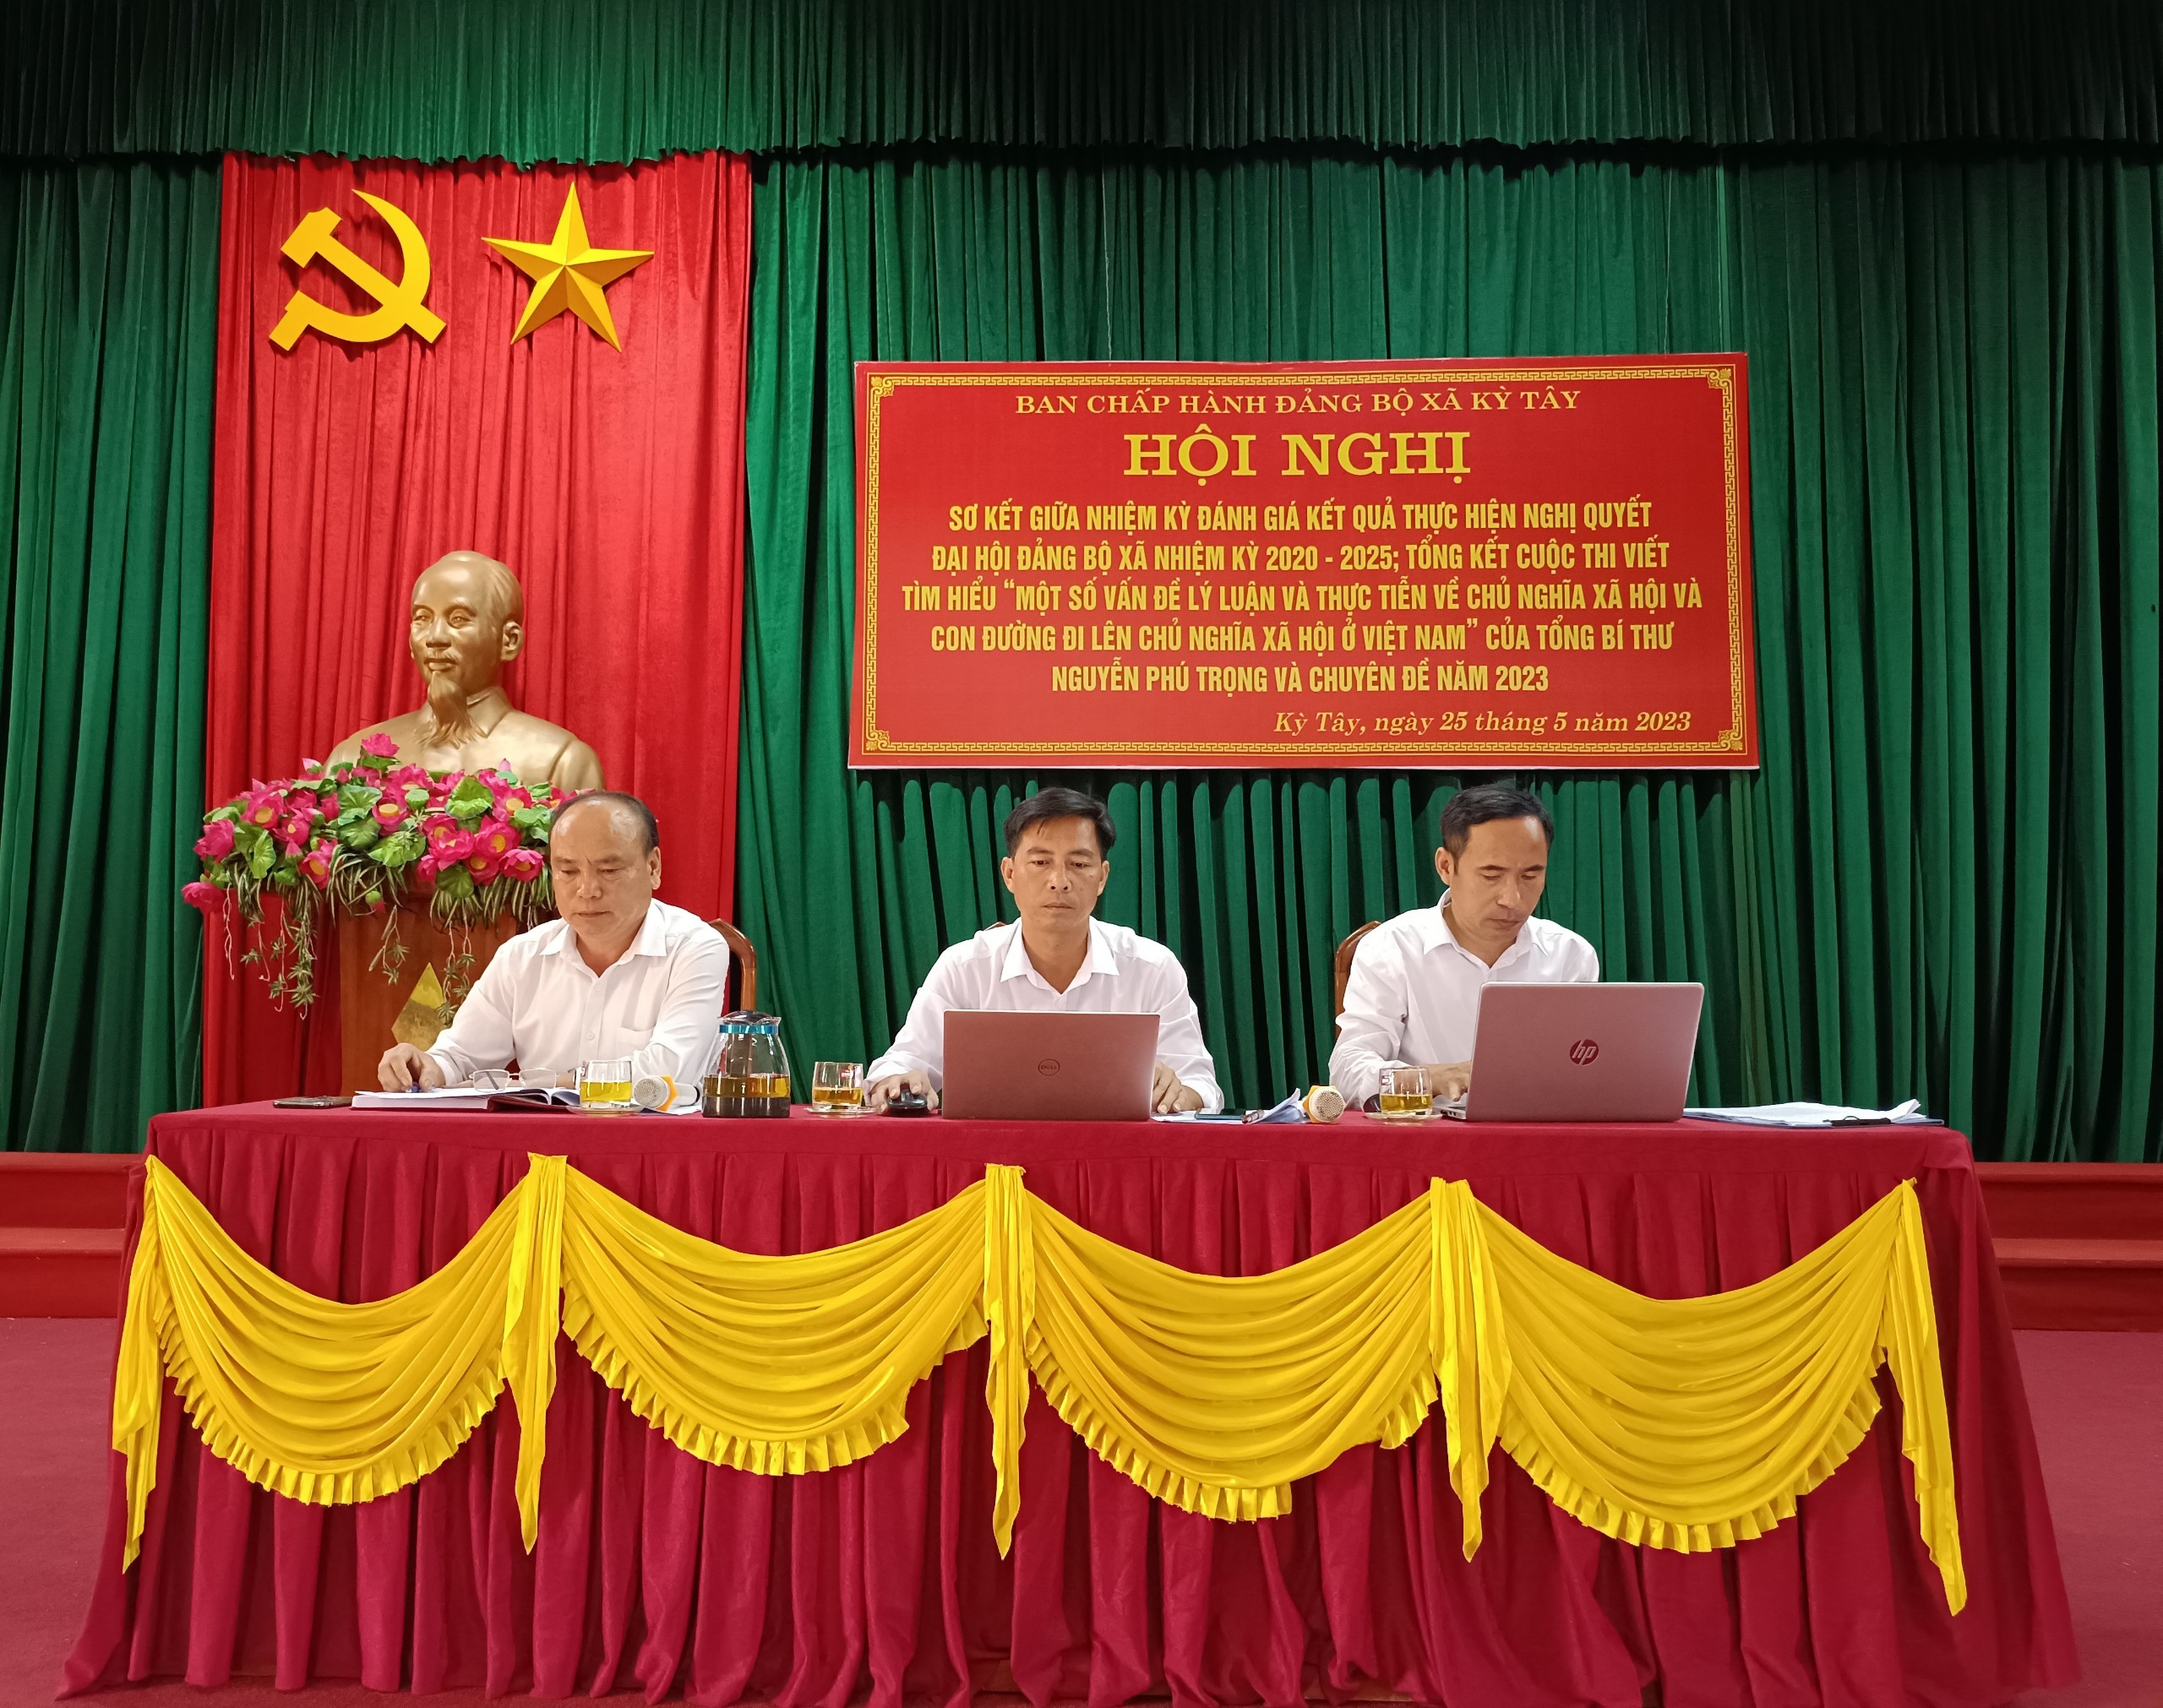 Đảng bộ xã Kỳ Tây sơ kết giữa nhiệm kỳ Đại hội 2020 - 2025; Tổng kết cuộc thi viết về: "Một số vấn đề lý luận và thực tiễn về Chủ nghĩa xã hội và con đường đi lên Chủ nghĩa xã hội ở Việt Nam"